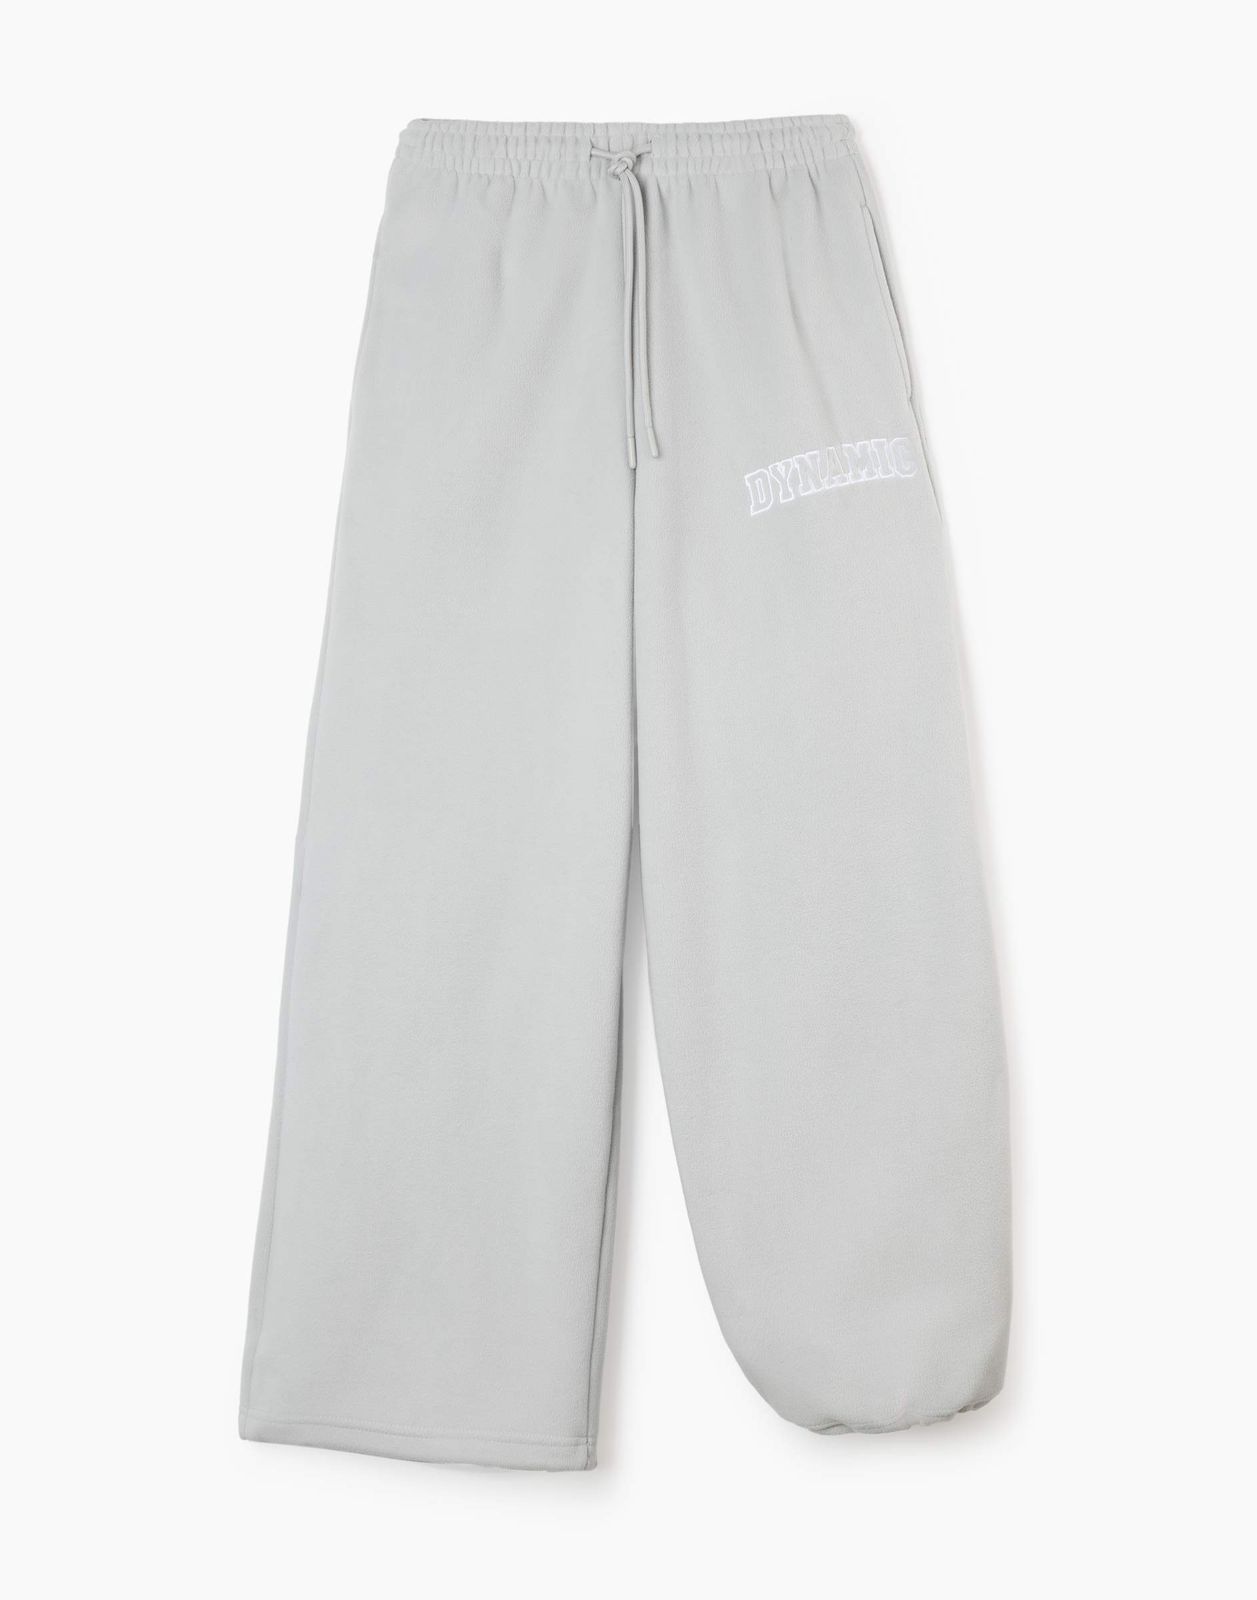 Брюки детские Gloria Jeans GAC022934, серый, 158 утёнок брюки детские крутой